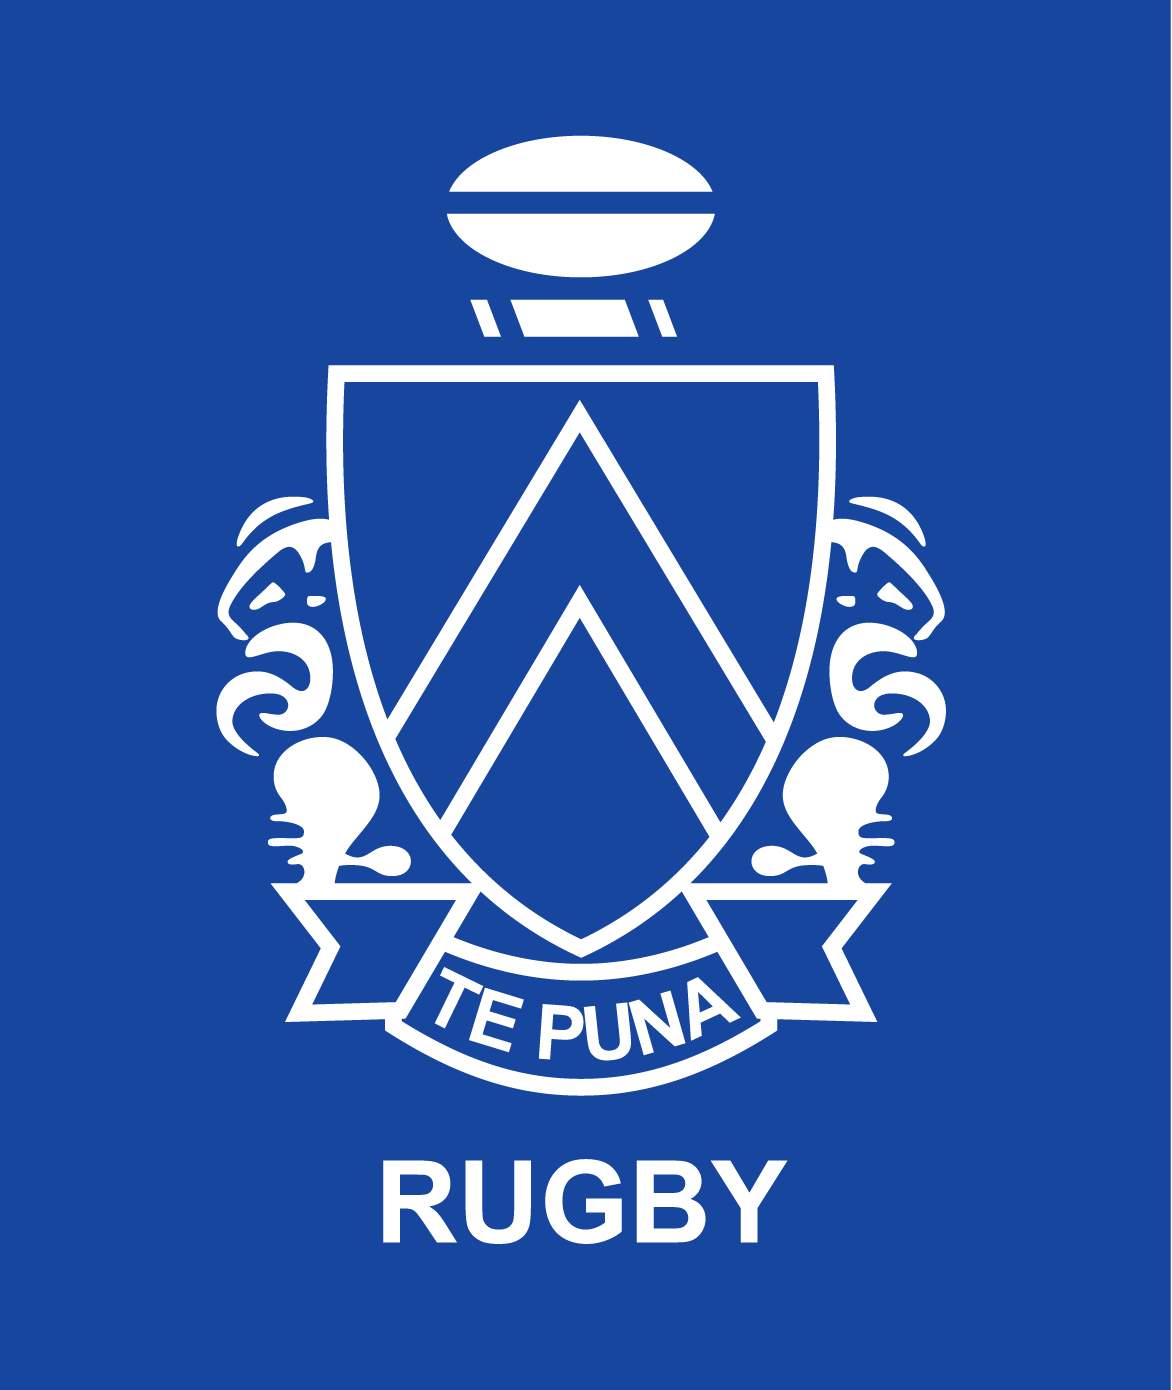 Te Puna JMC, Rugby